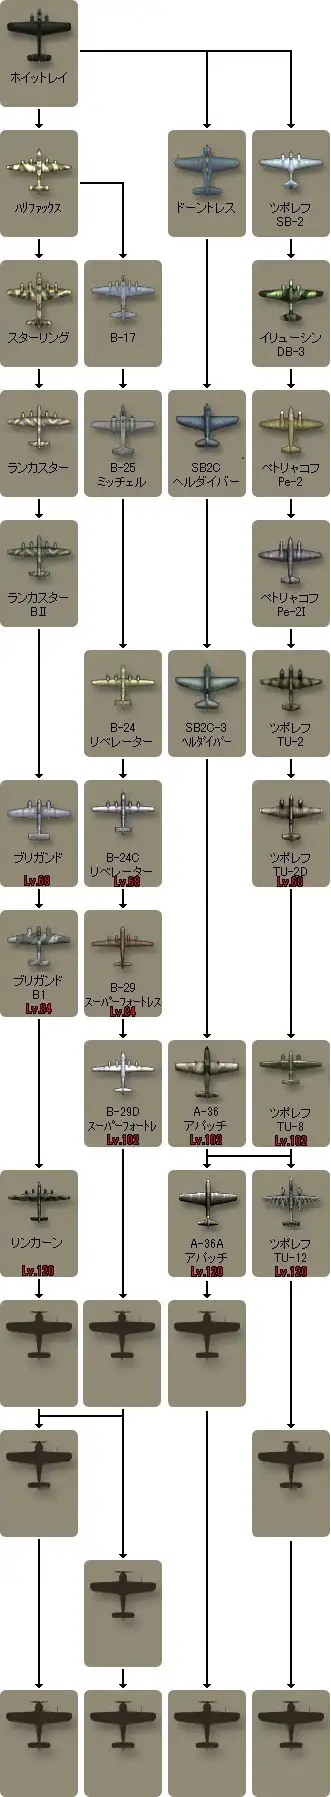 連合爆撃機_0.jpg